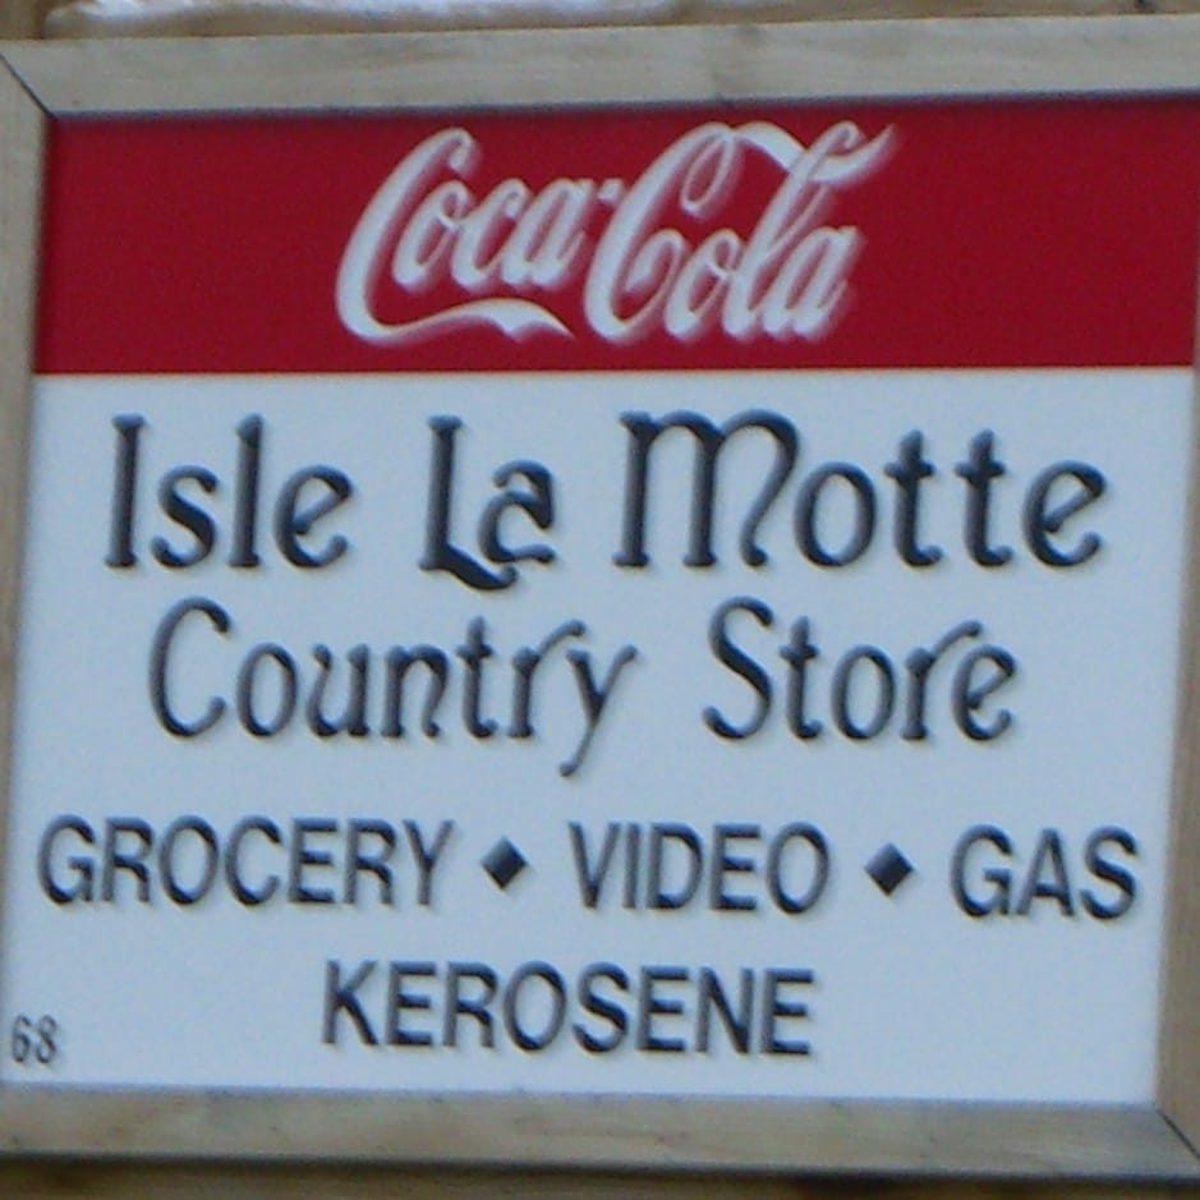 Isle La Motte Country Store